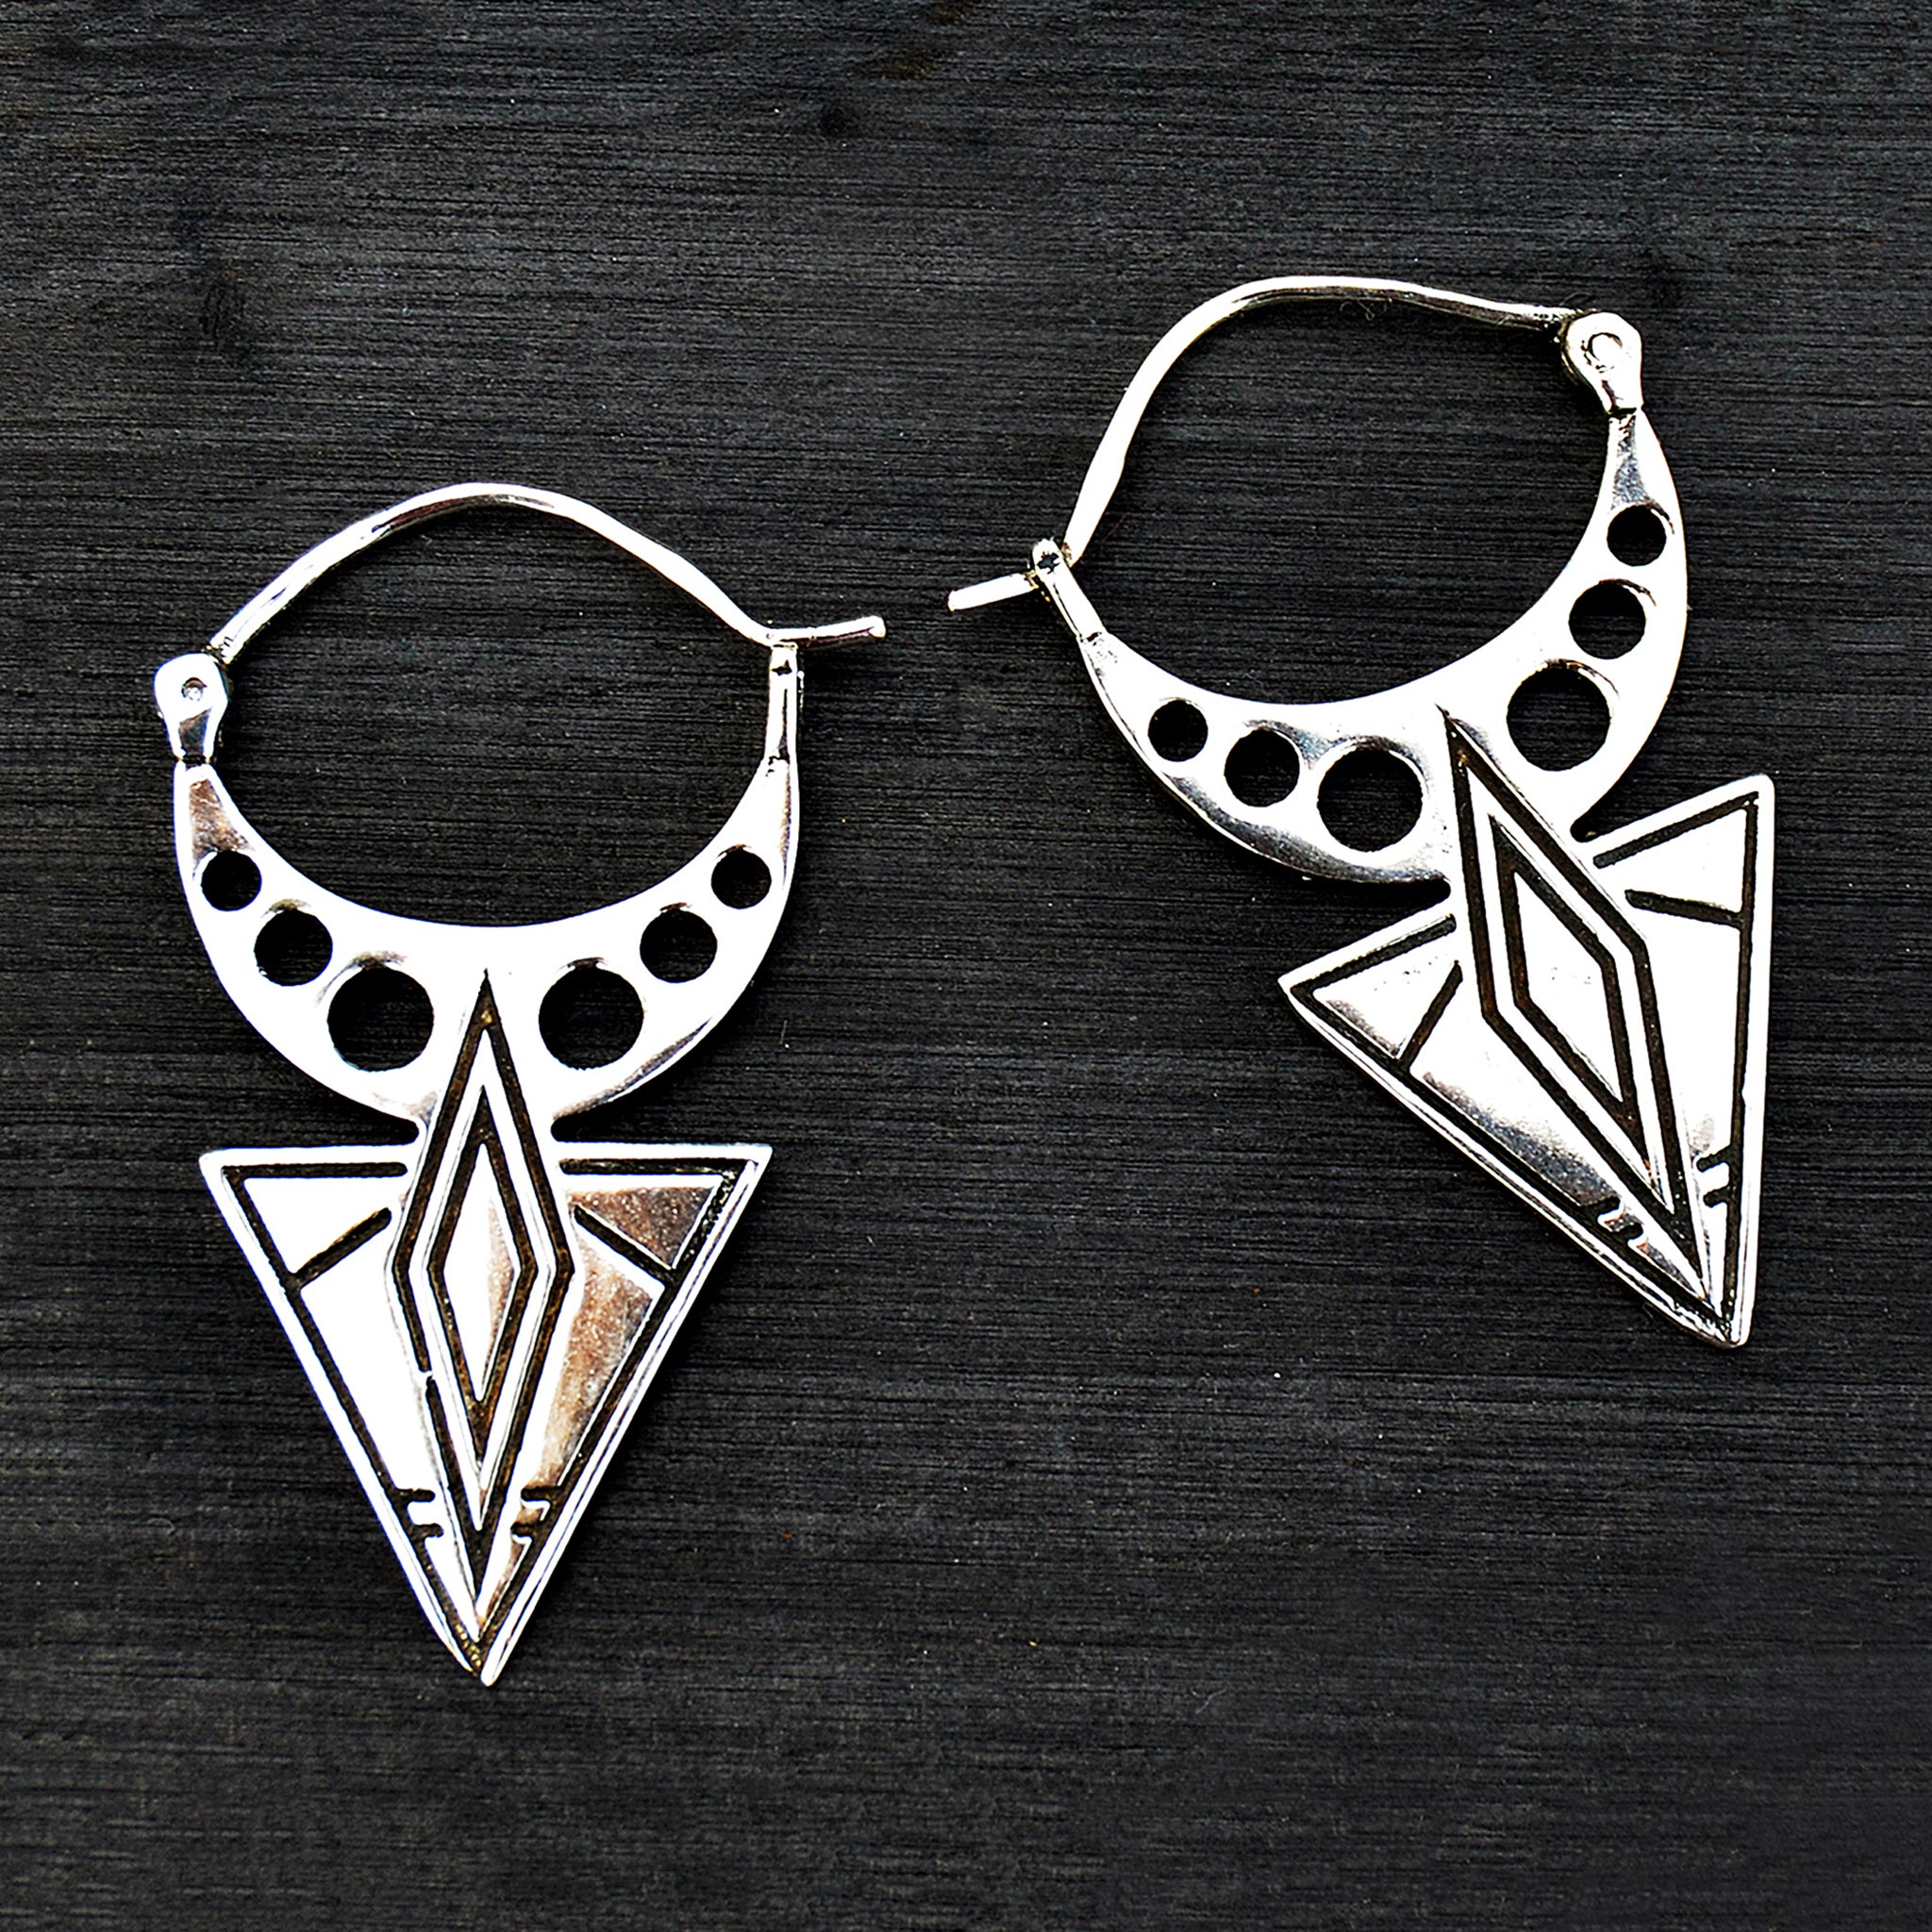 Silver geometric aztec earrings on black background